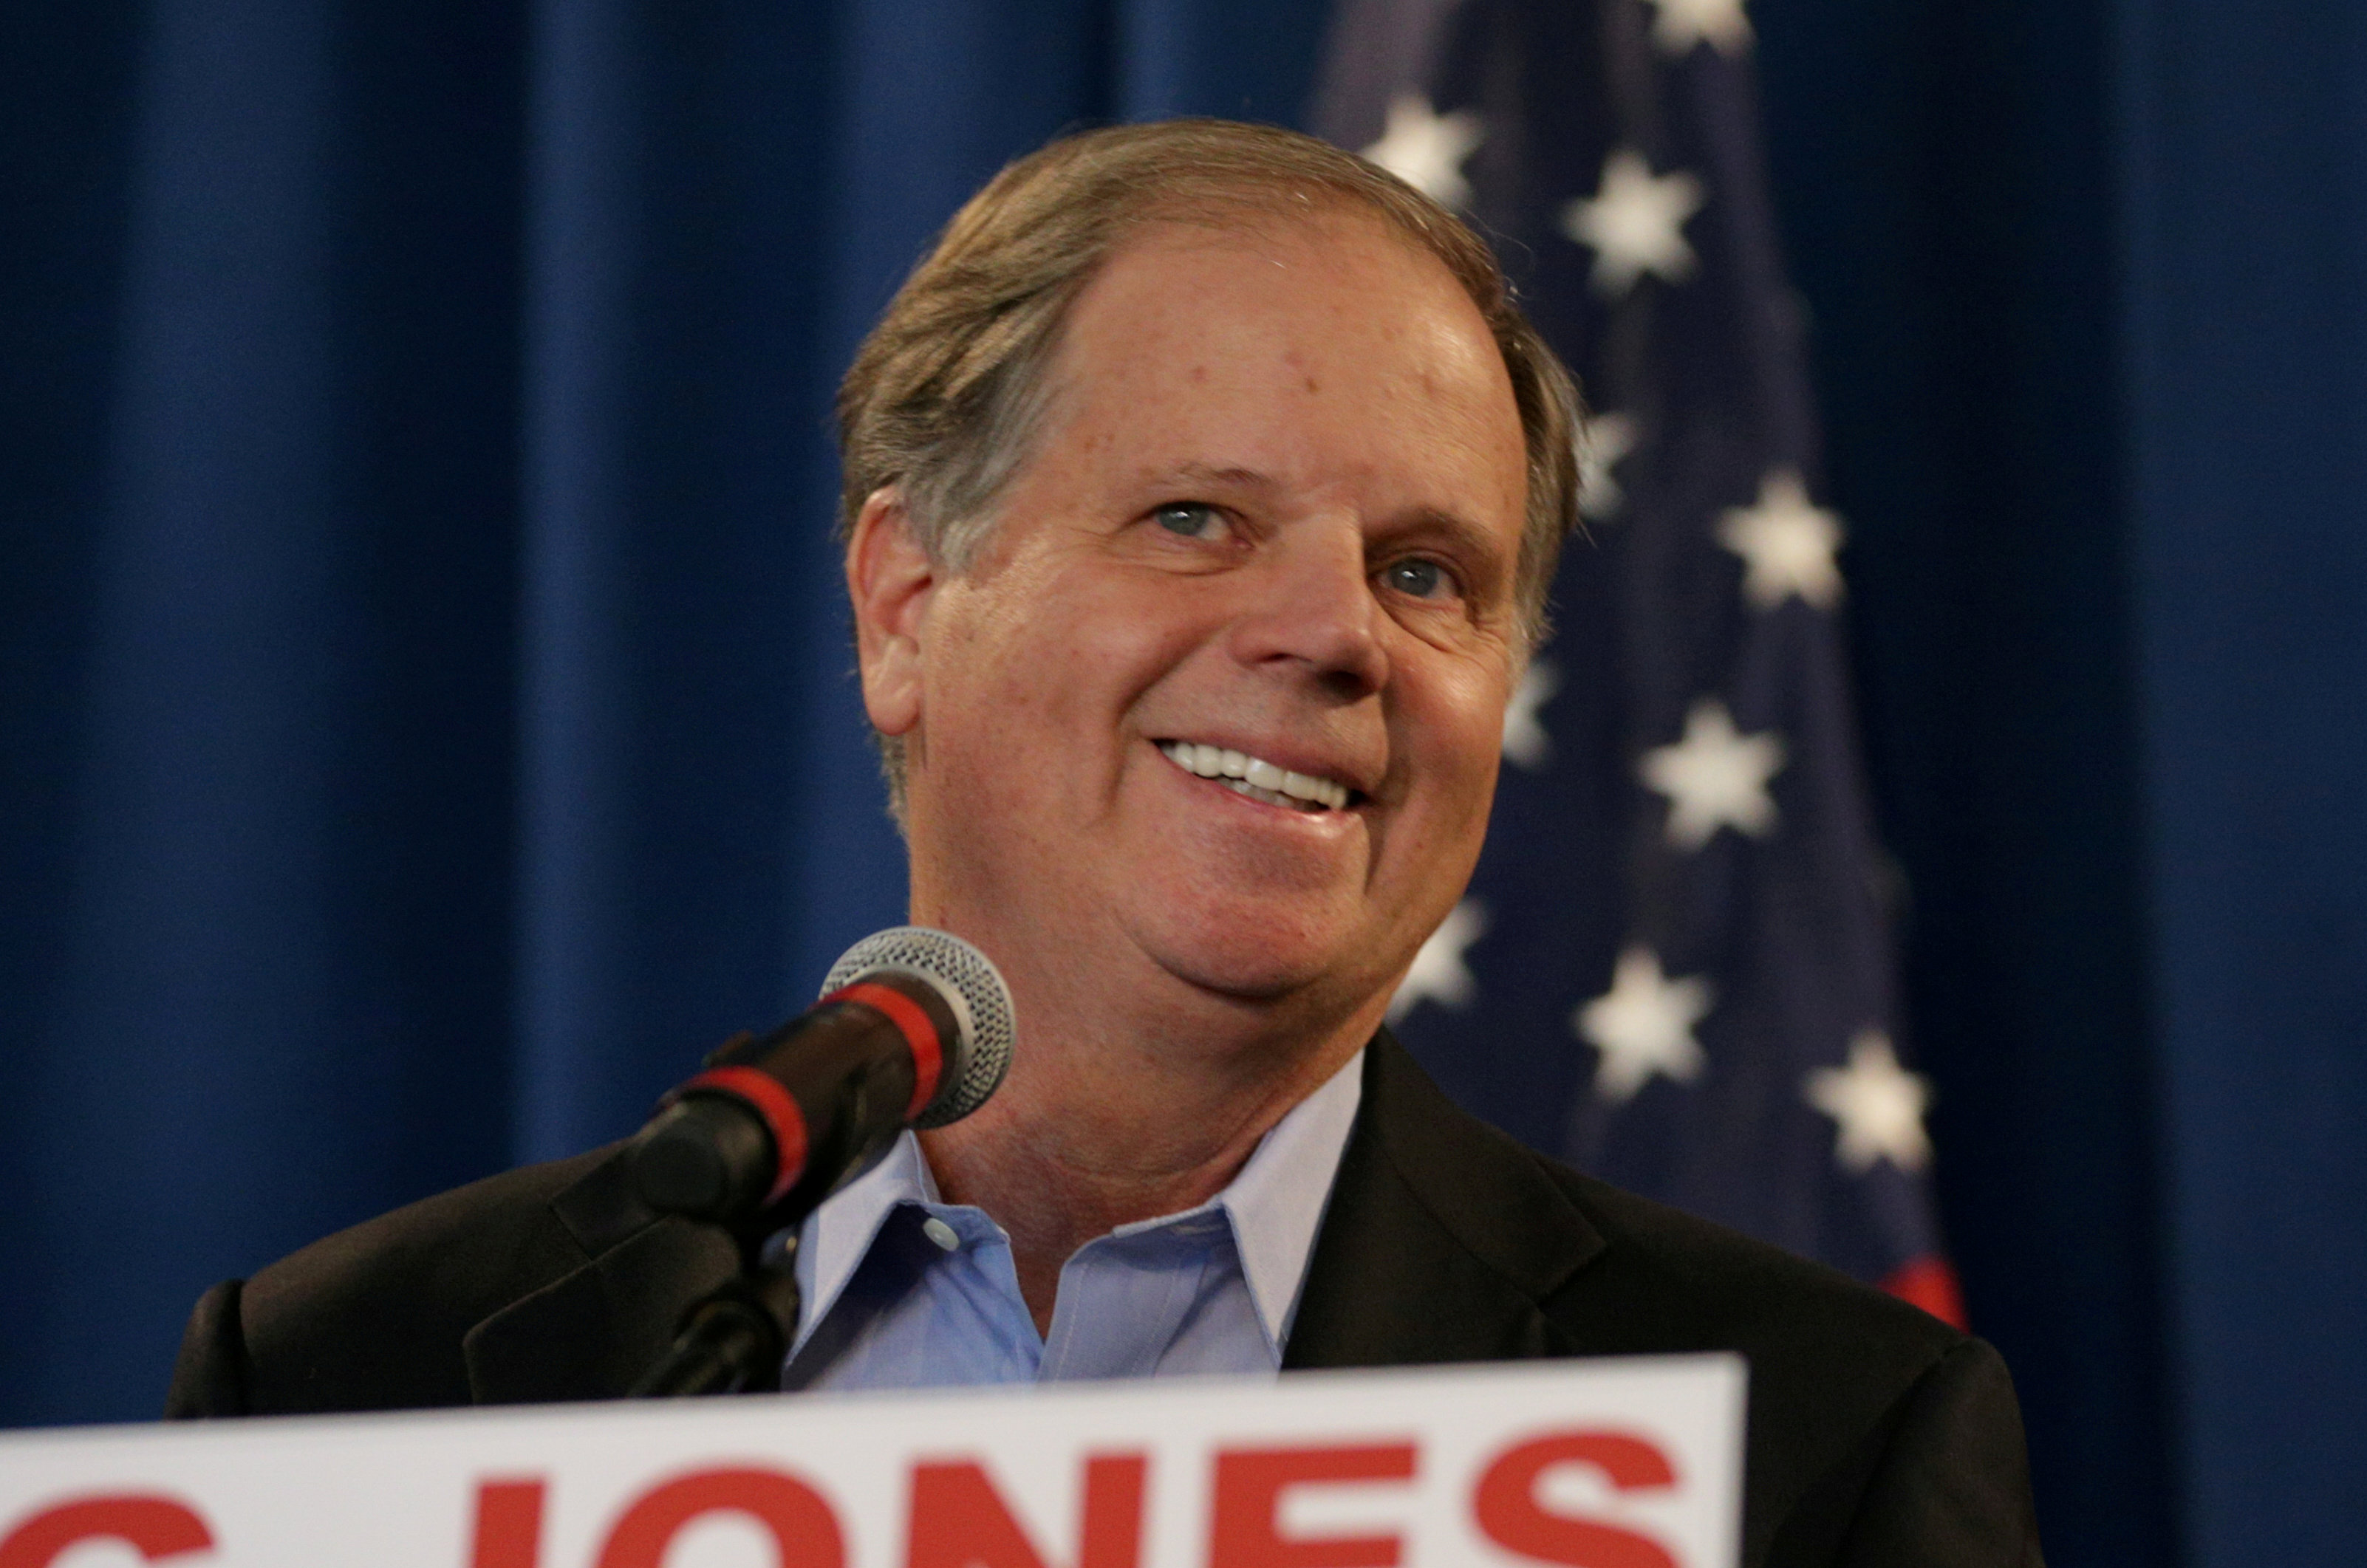 Alabama declara al demócrata Jones ganador de elección al Senado